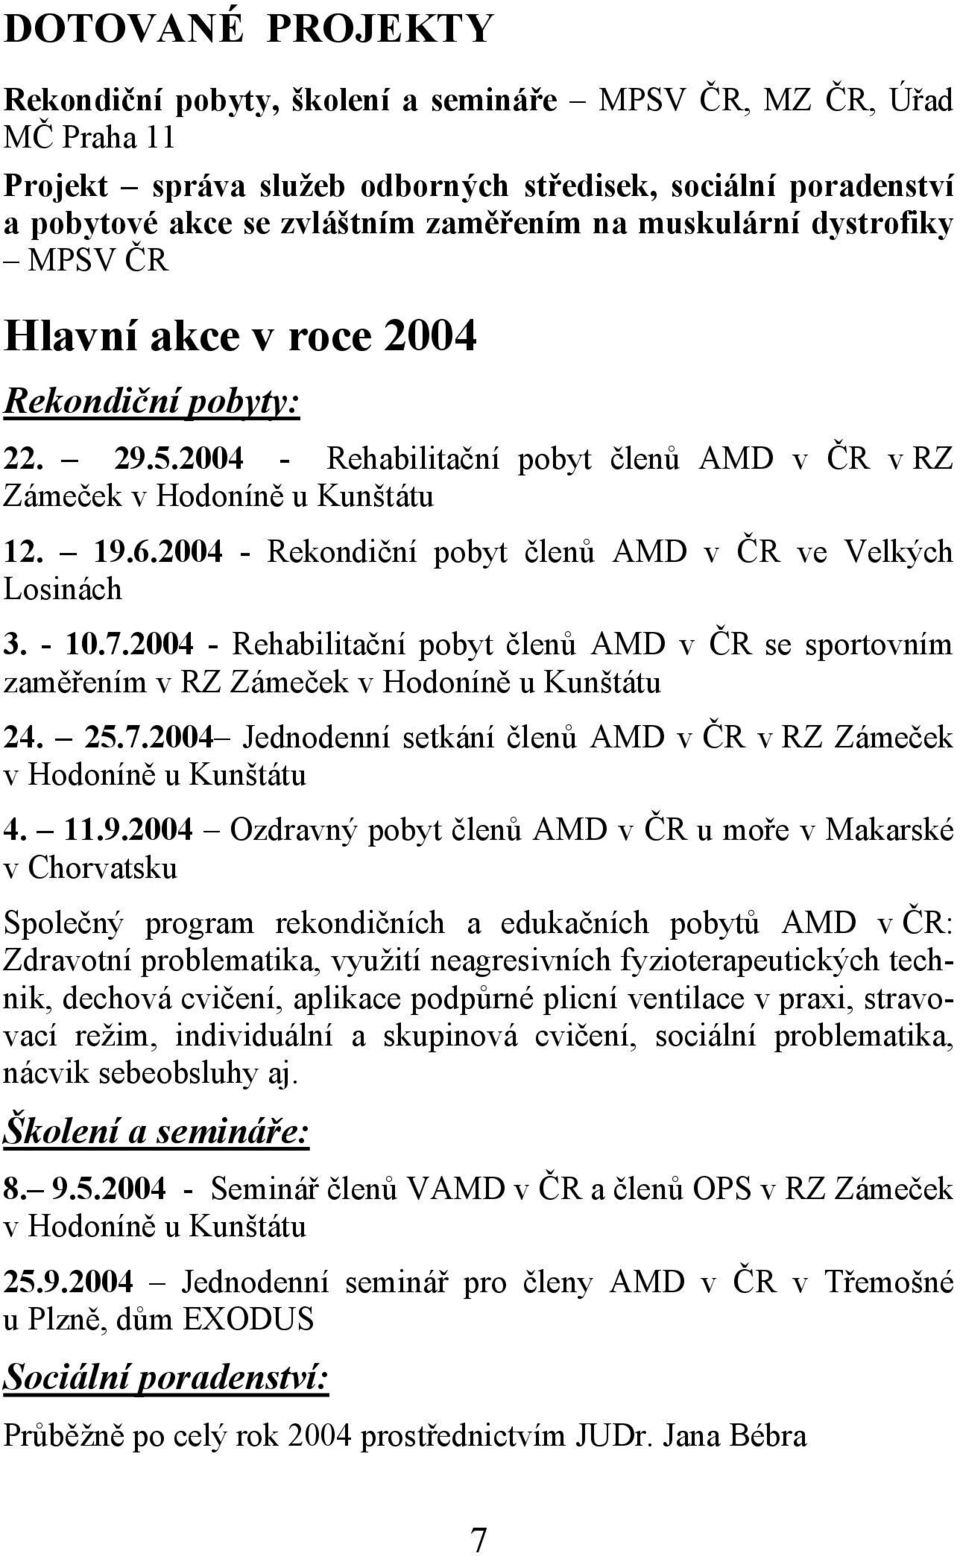 2004 - Rekondiční pobyt členů AMD v ČR ve Velkých Losinách 3. - 10.7.2004 - Rehabilitační pobyt členů AMD v ČR se sportovním zaměřením v RZ Zámeček v Hodoníně u Kunštátu 24. 25.7.2004 Jednodenní setkání členů AMD v ČR v RZ Zámeček v Hodoníně u Kunštátu 4.